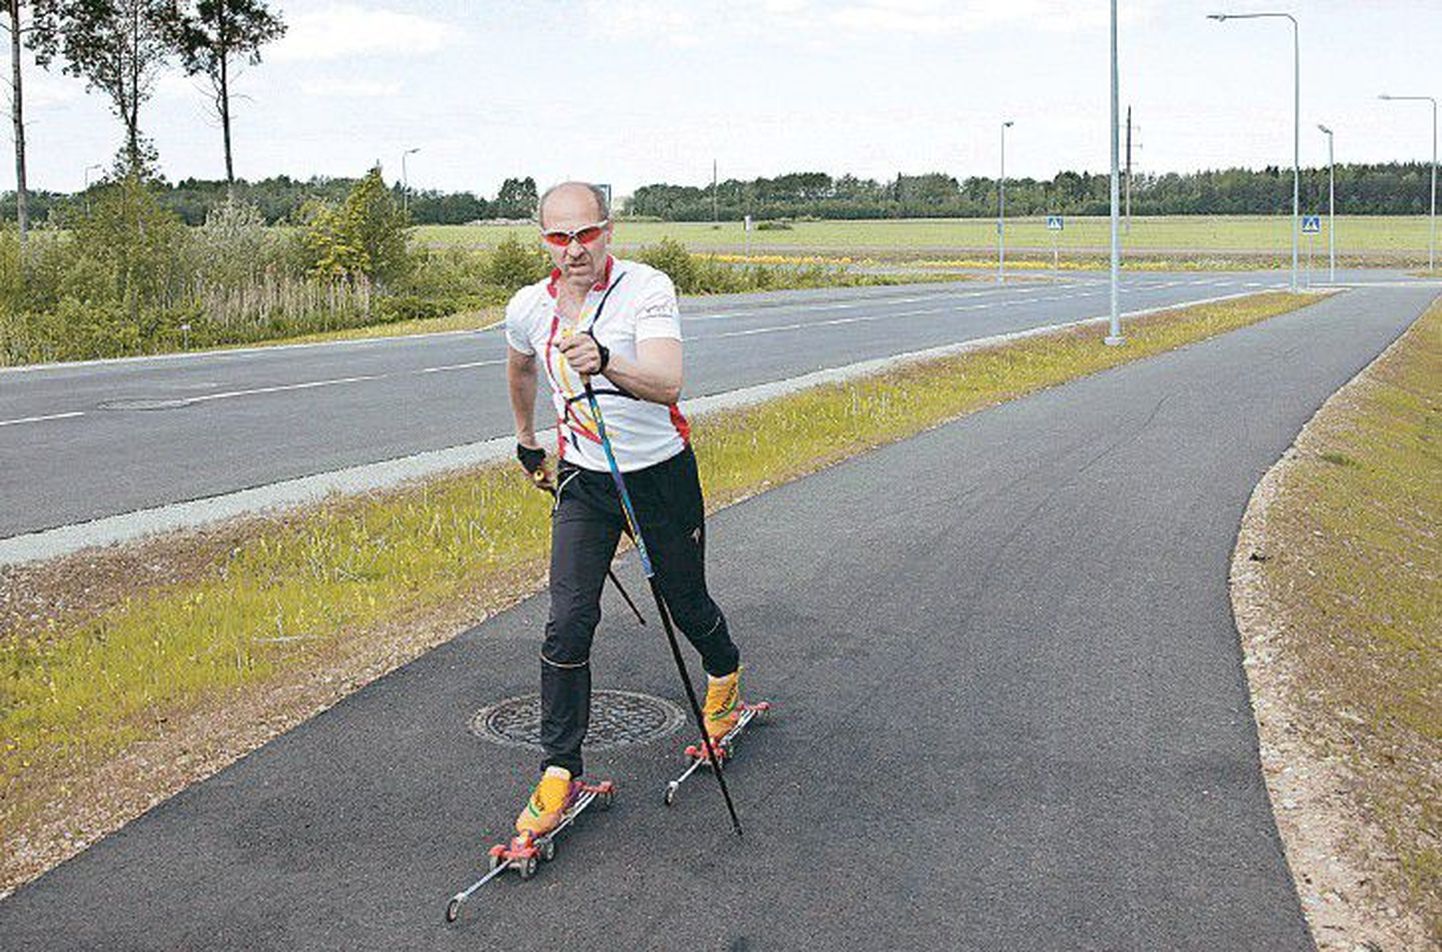 В рамках проекта развития Narva Futura дороги построены на европейские деньги, но ни одного здания на этой территории пока не возведено. В понедельник по велодорожке катался один-единственный спортсмен на роликовых лыжах.